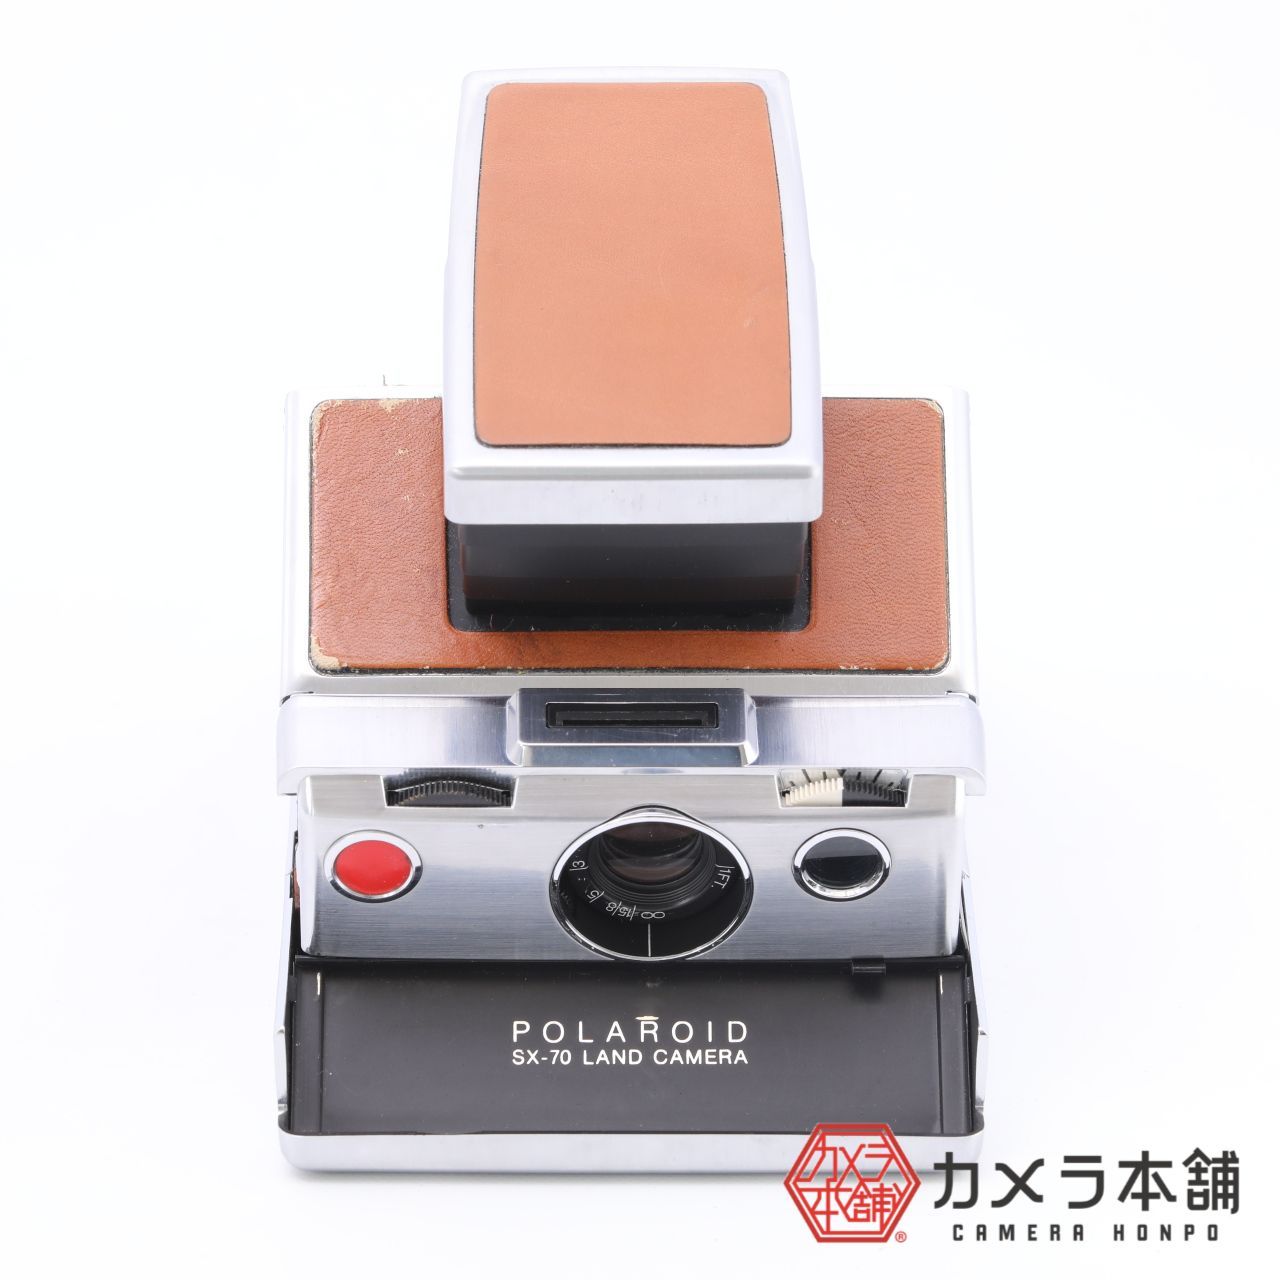 Polaroid ポラロイド SX-70 LAND CAMERA フィルムカメラ